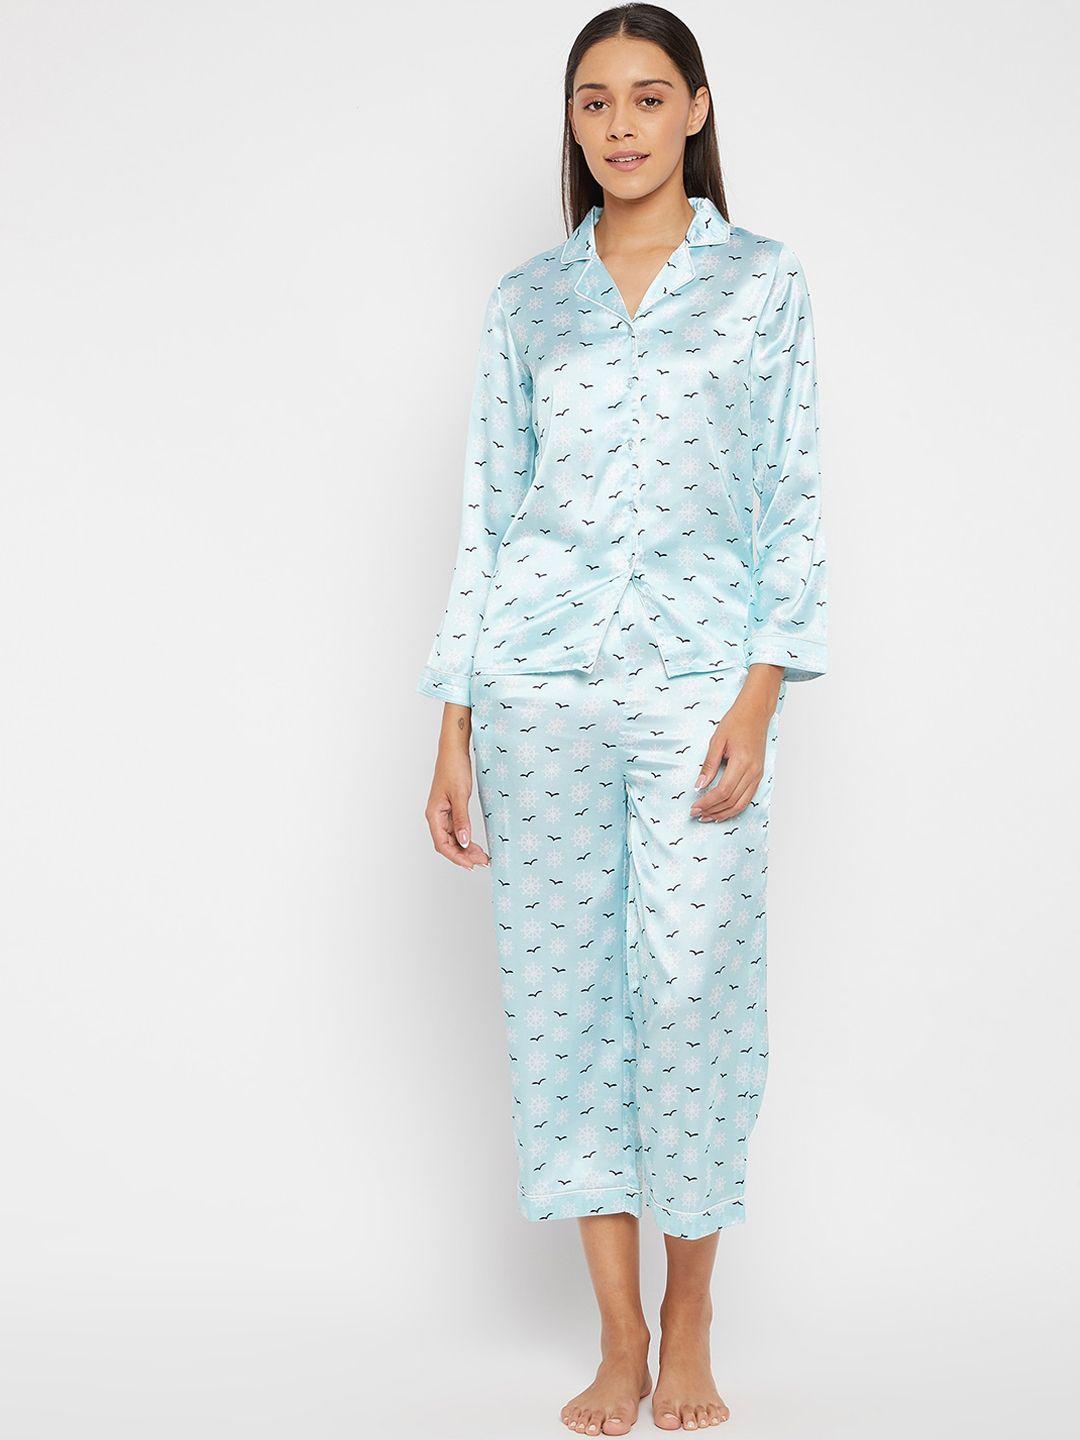 panit women blue & white printed night suit